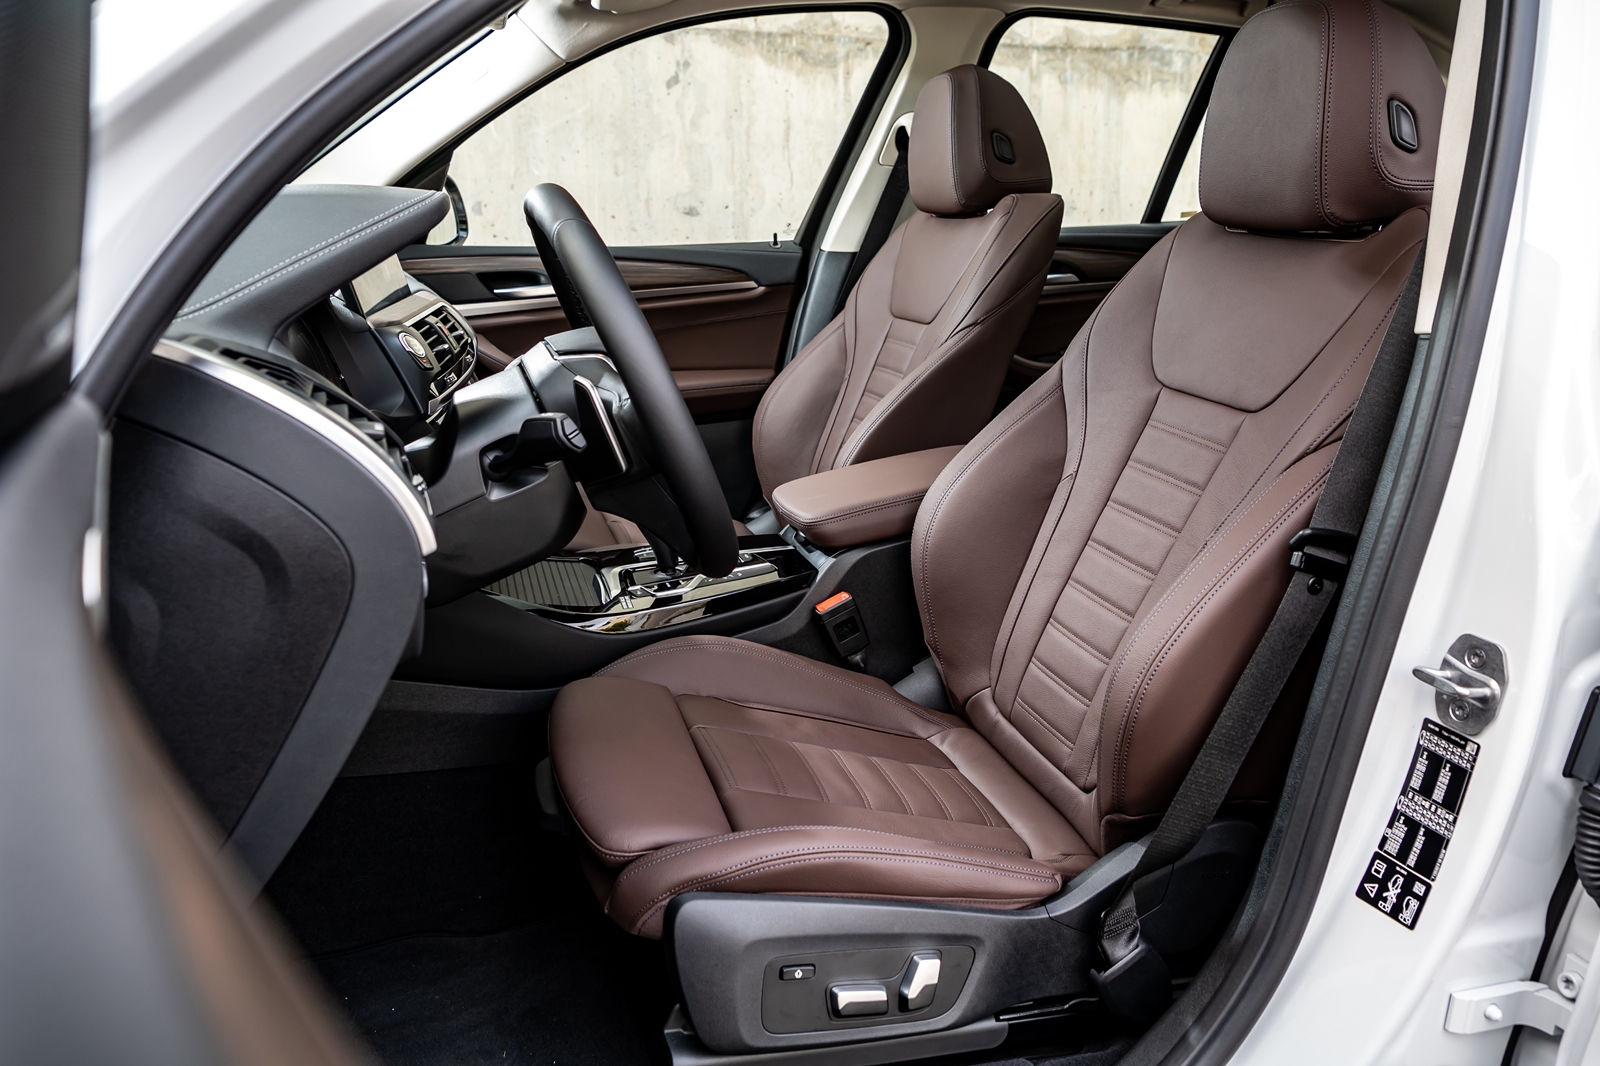 全新 BMW X3、X4白金領航版提供 Vernasca 真皮包覆跑車座椅。